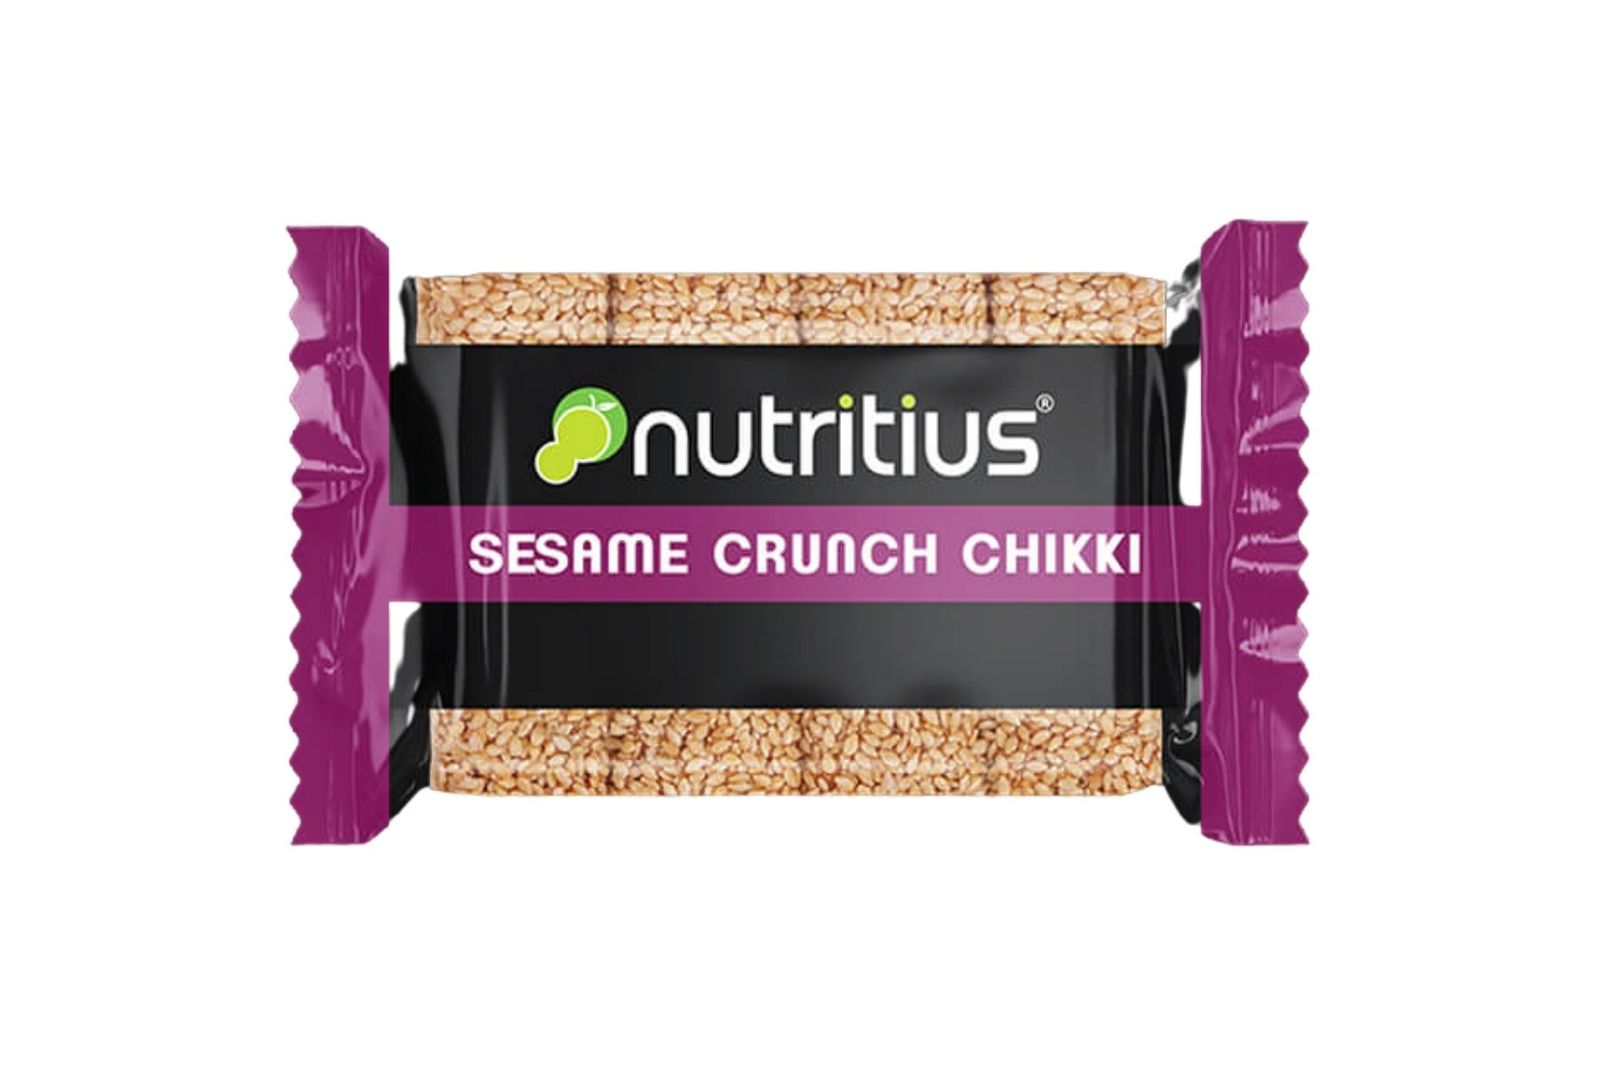 NutritIus Sesame Chikki